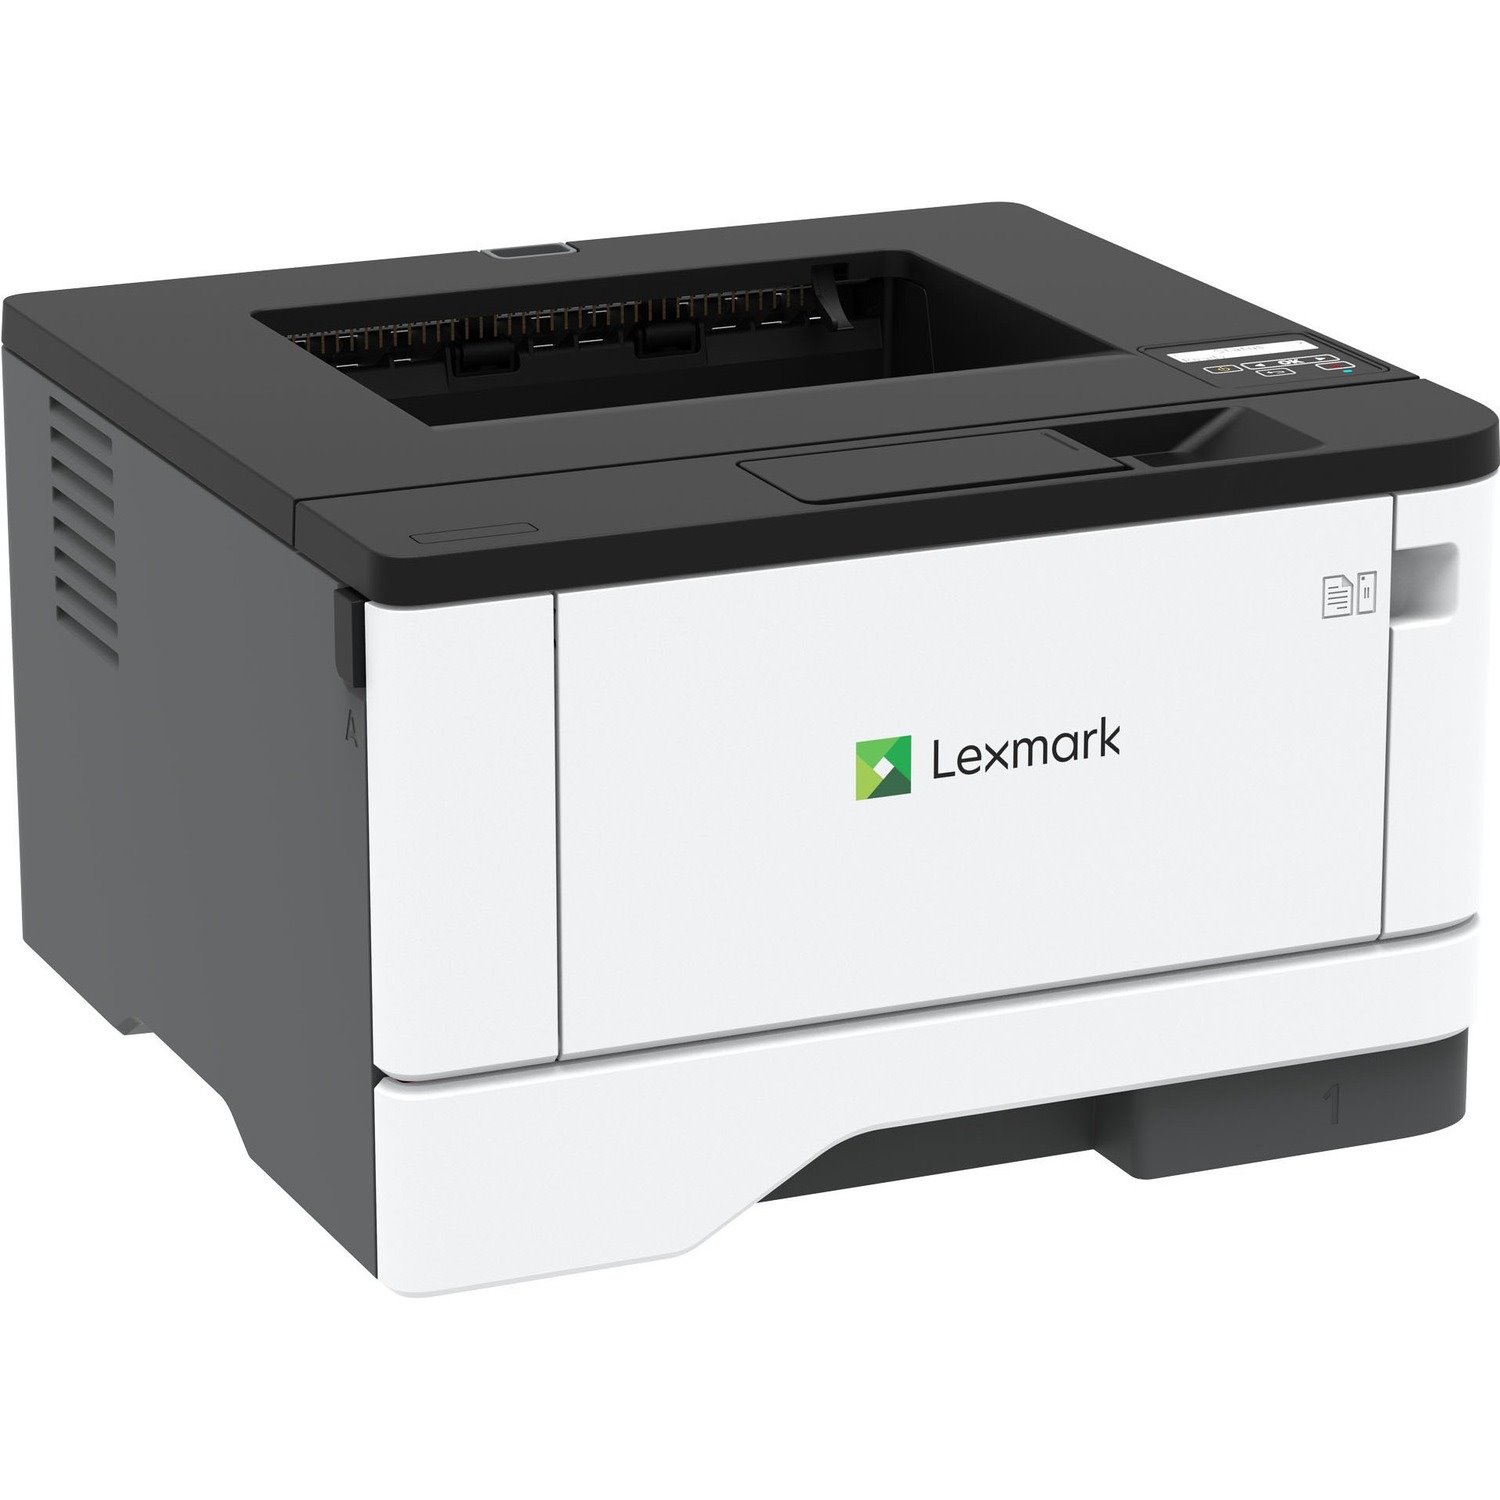 Lexmark MS431dw Desktop Laser Printer - Monochrome